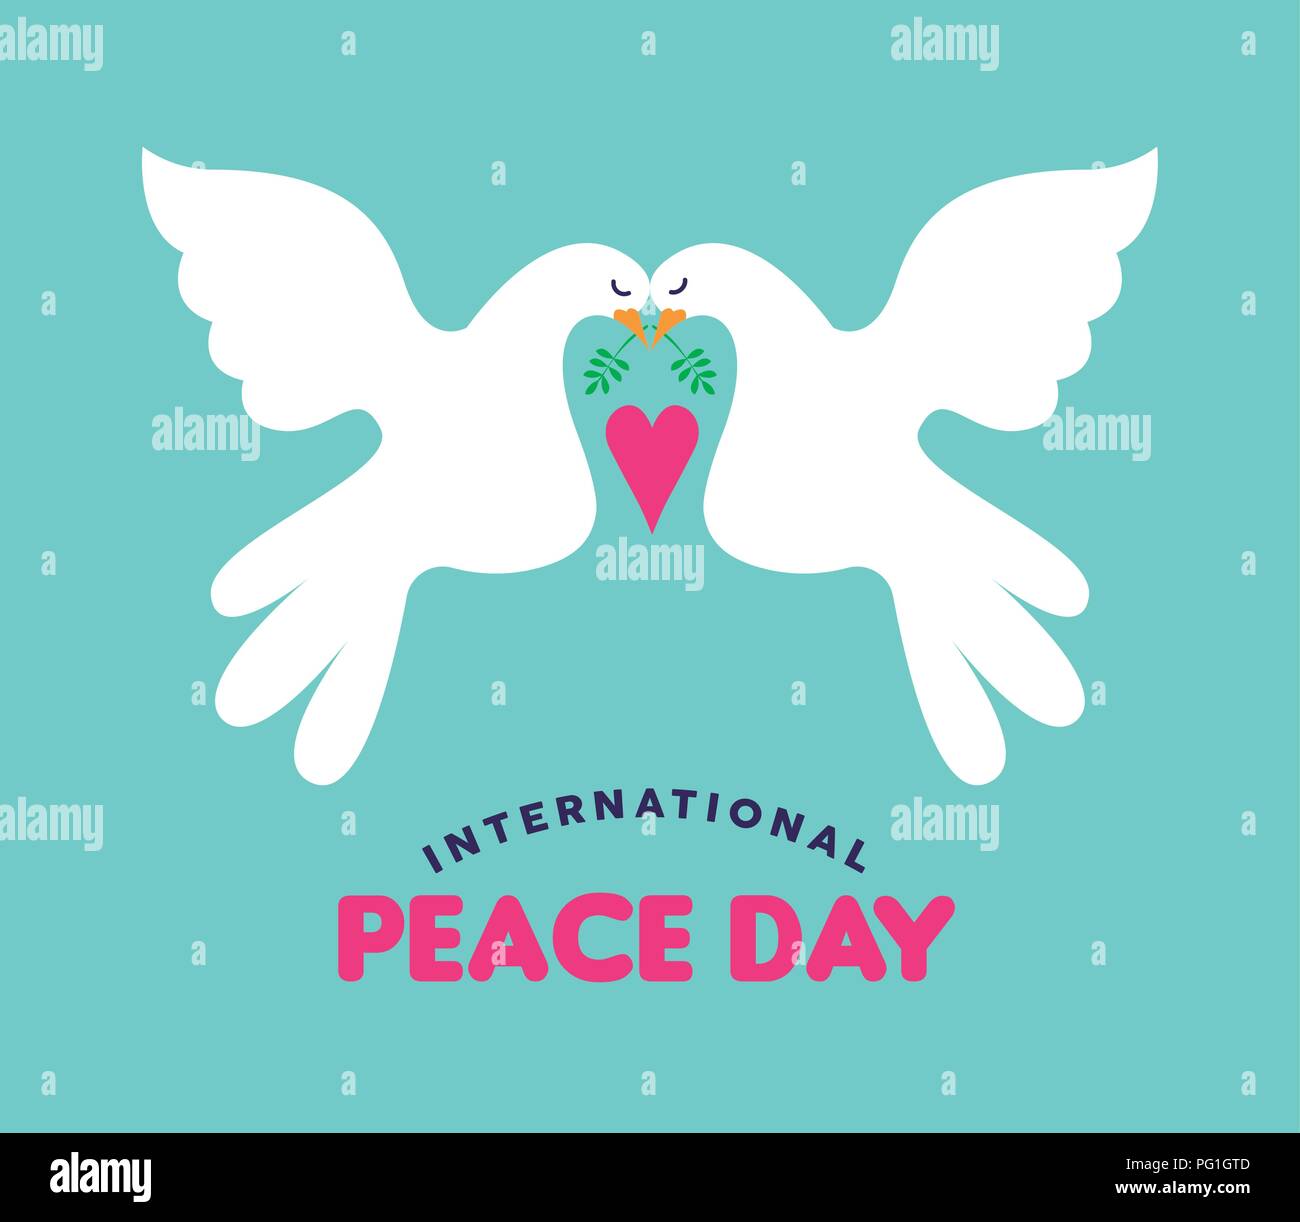 La pace internazionale giorno illustrazione di colombe bianche giovane rientranti nell'amore. Disegnata a mano stile concept design di biglietto di auguri per evento globale ce pacifica Illustrazione Vettoriale